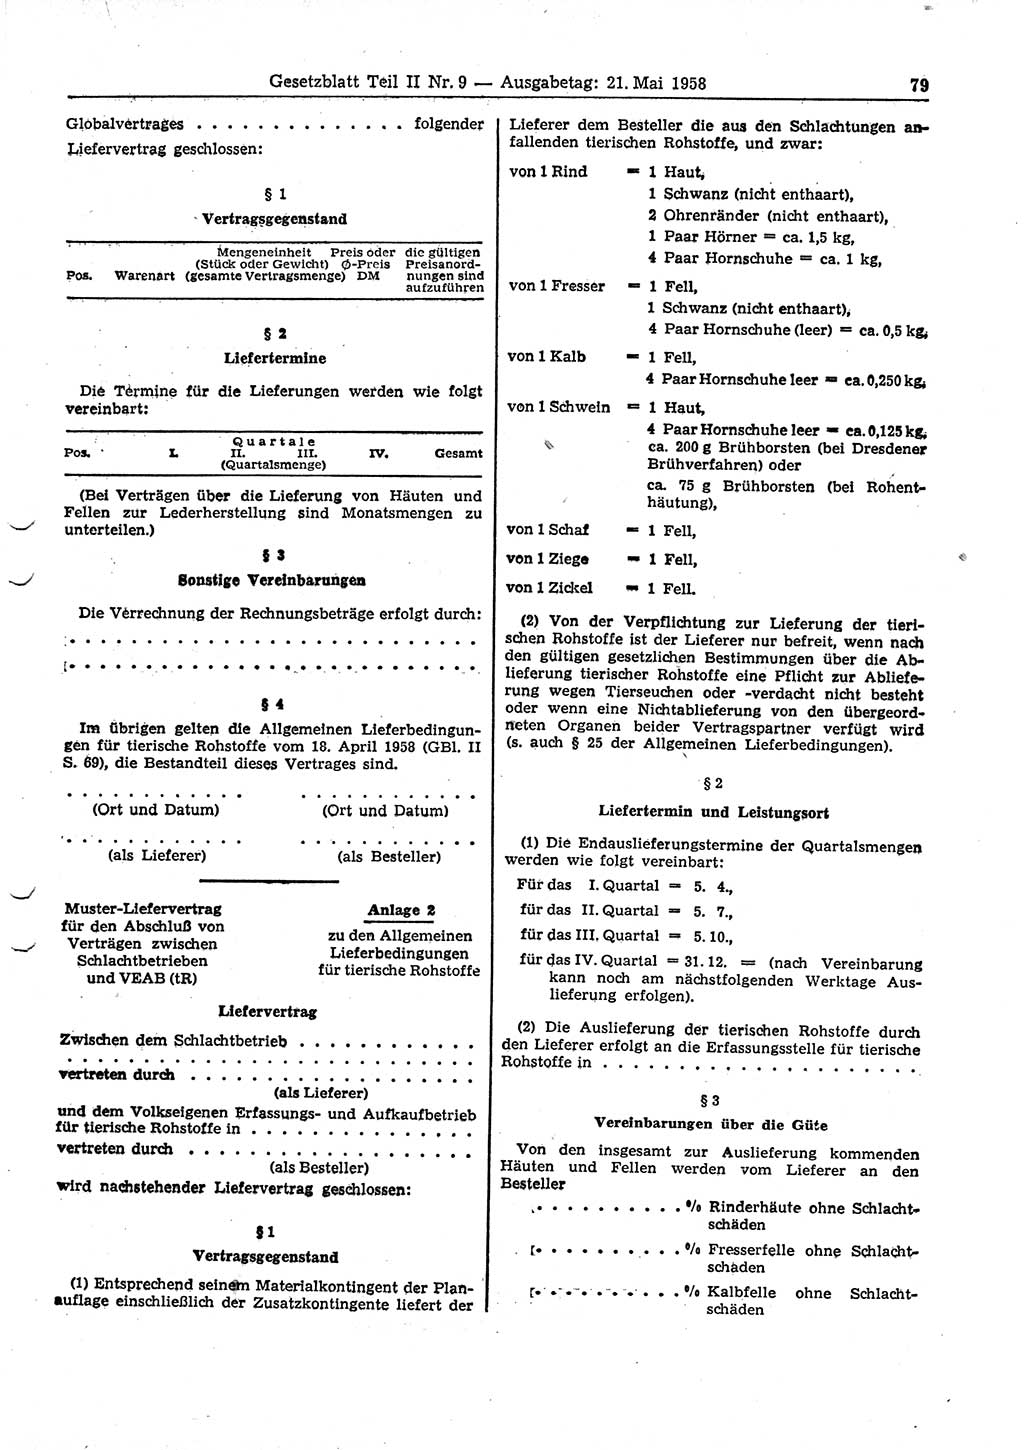 Gesetzblatt (GBl.) der Deutschen Demokratischen Republik (DDR) Teil ⅠⅠ 1958, Seite 79 (GBl. DDR ⅠⅠ 1958, S. 79)